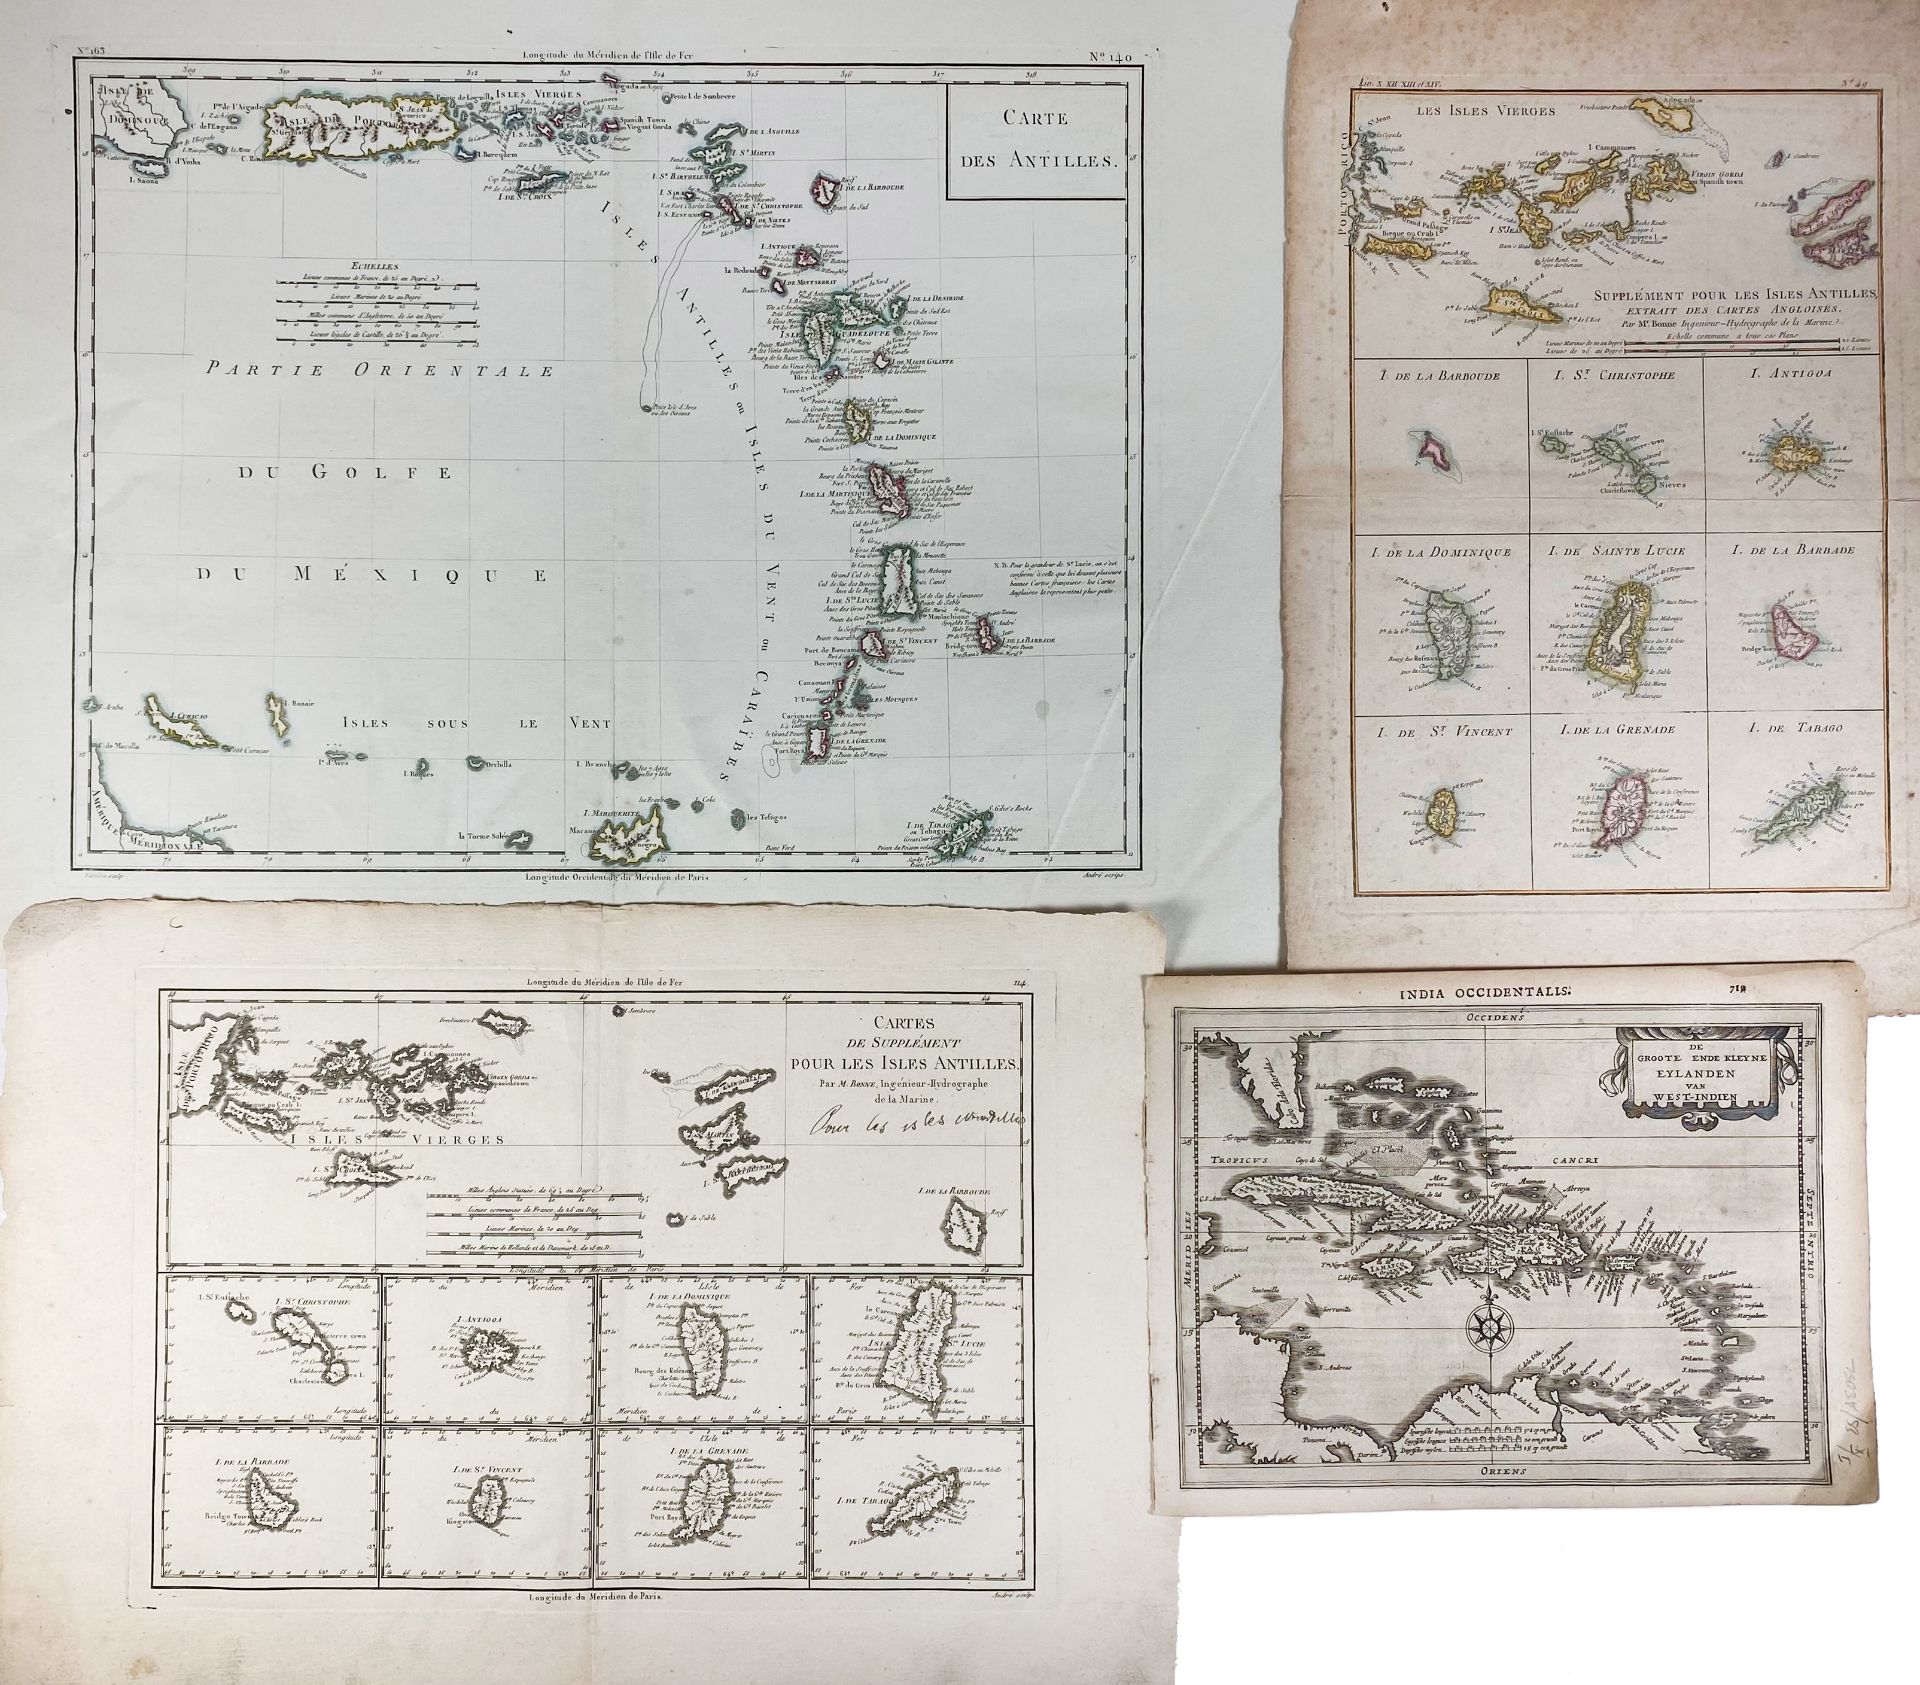 SOUTH AMERICA -- CARIBBEAN -- "CARTE DES ANTILLES". (c. 1800). Engr. map by Tardieu